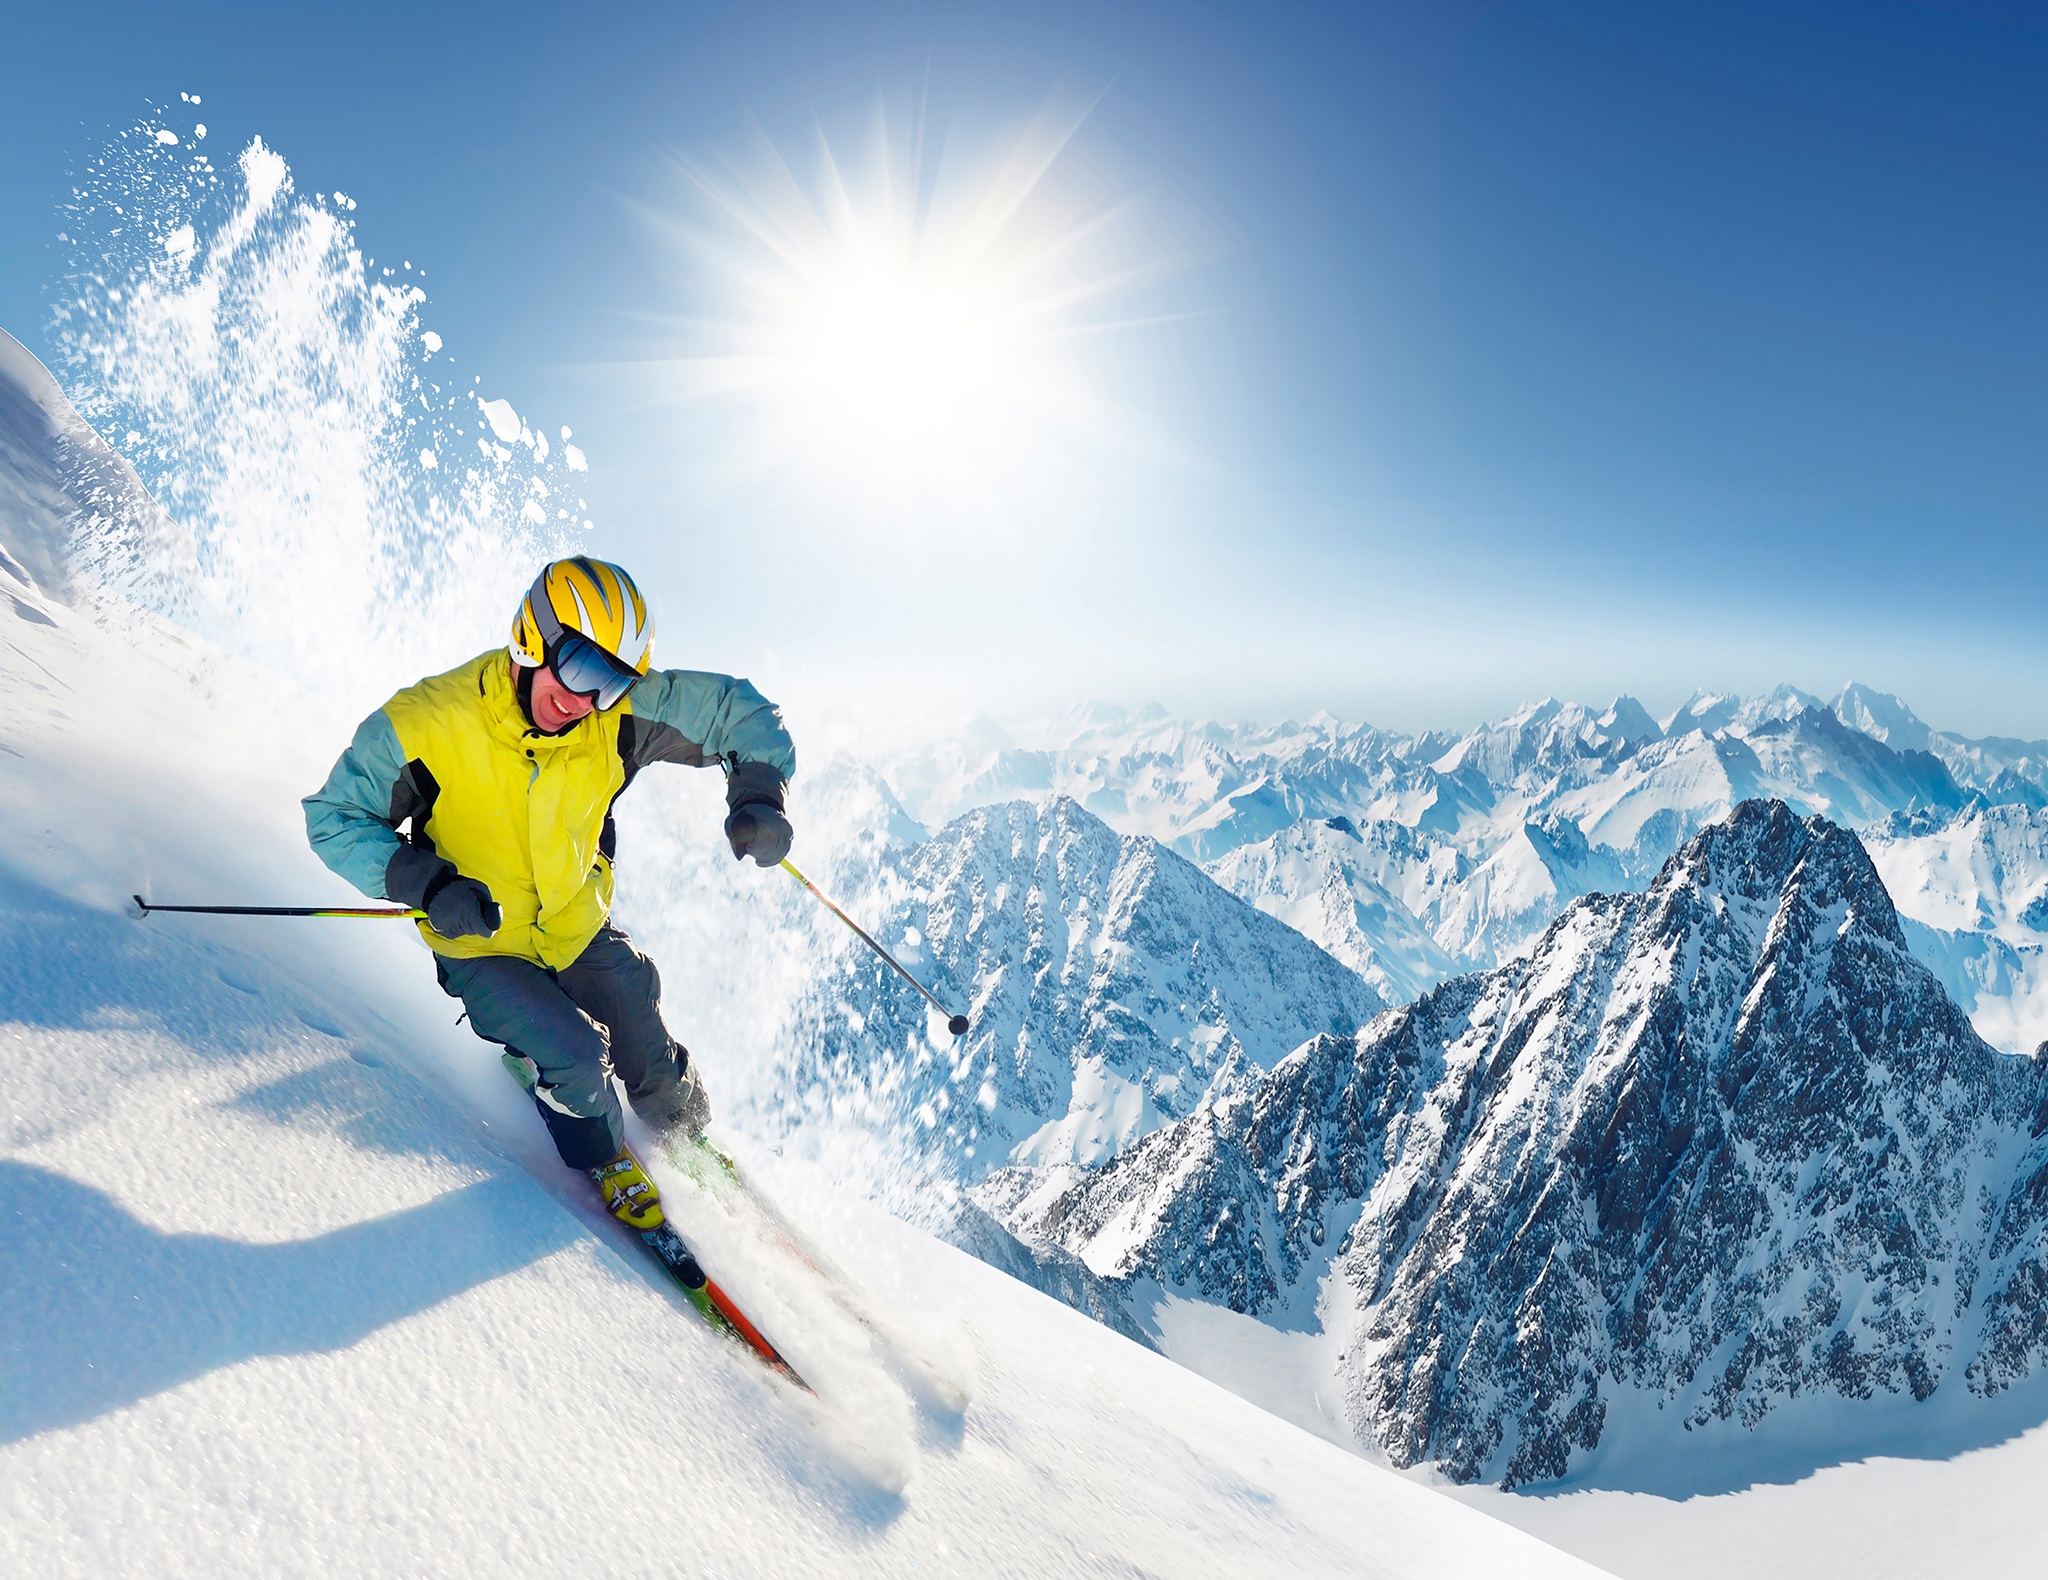 Скачать обои бесплатно Зима, Солнце, Снег, Гора, Виды Спорта, Катание На Лыжах картинка на рабочий стол ПК